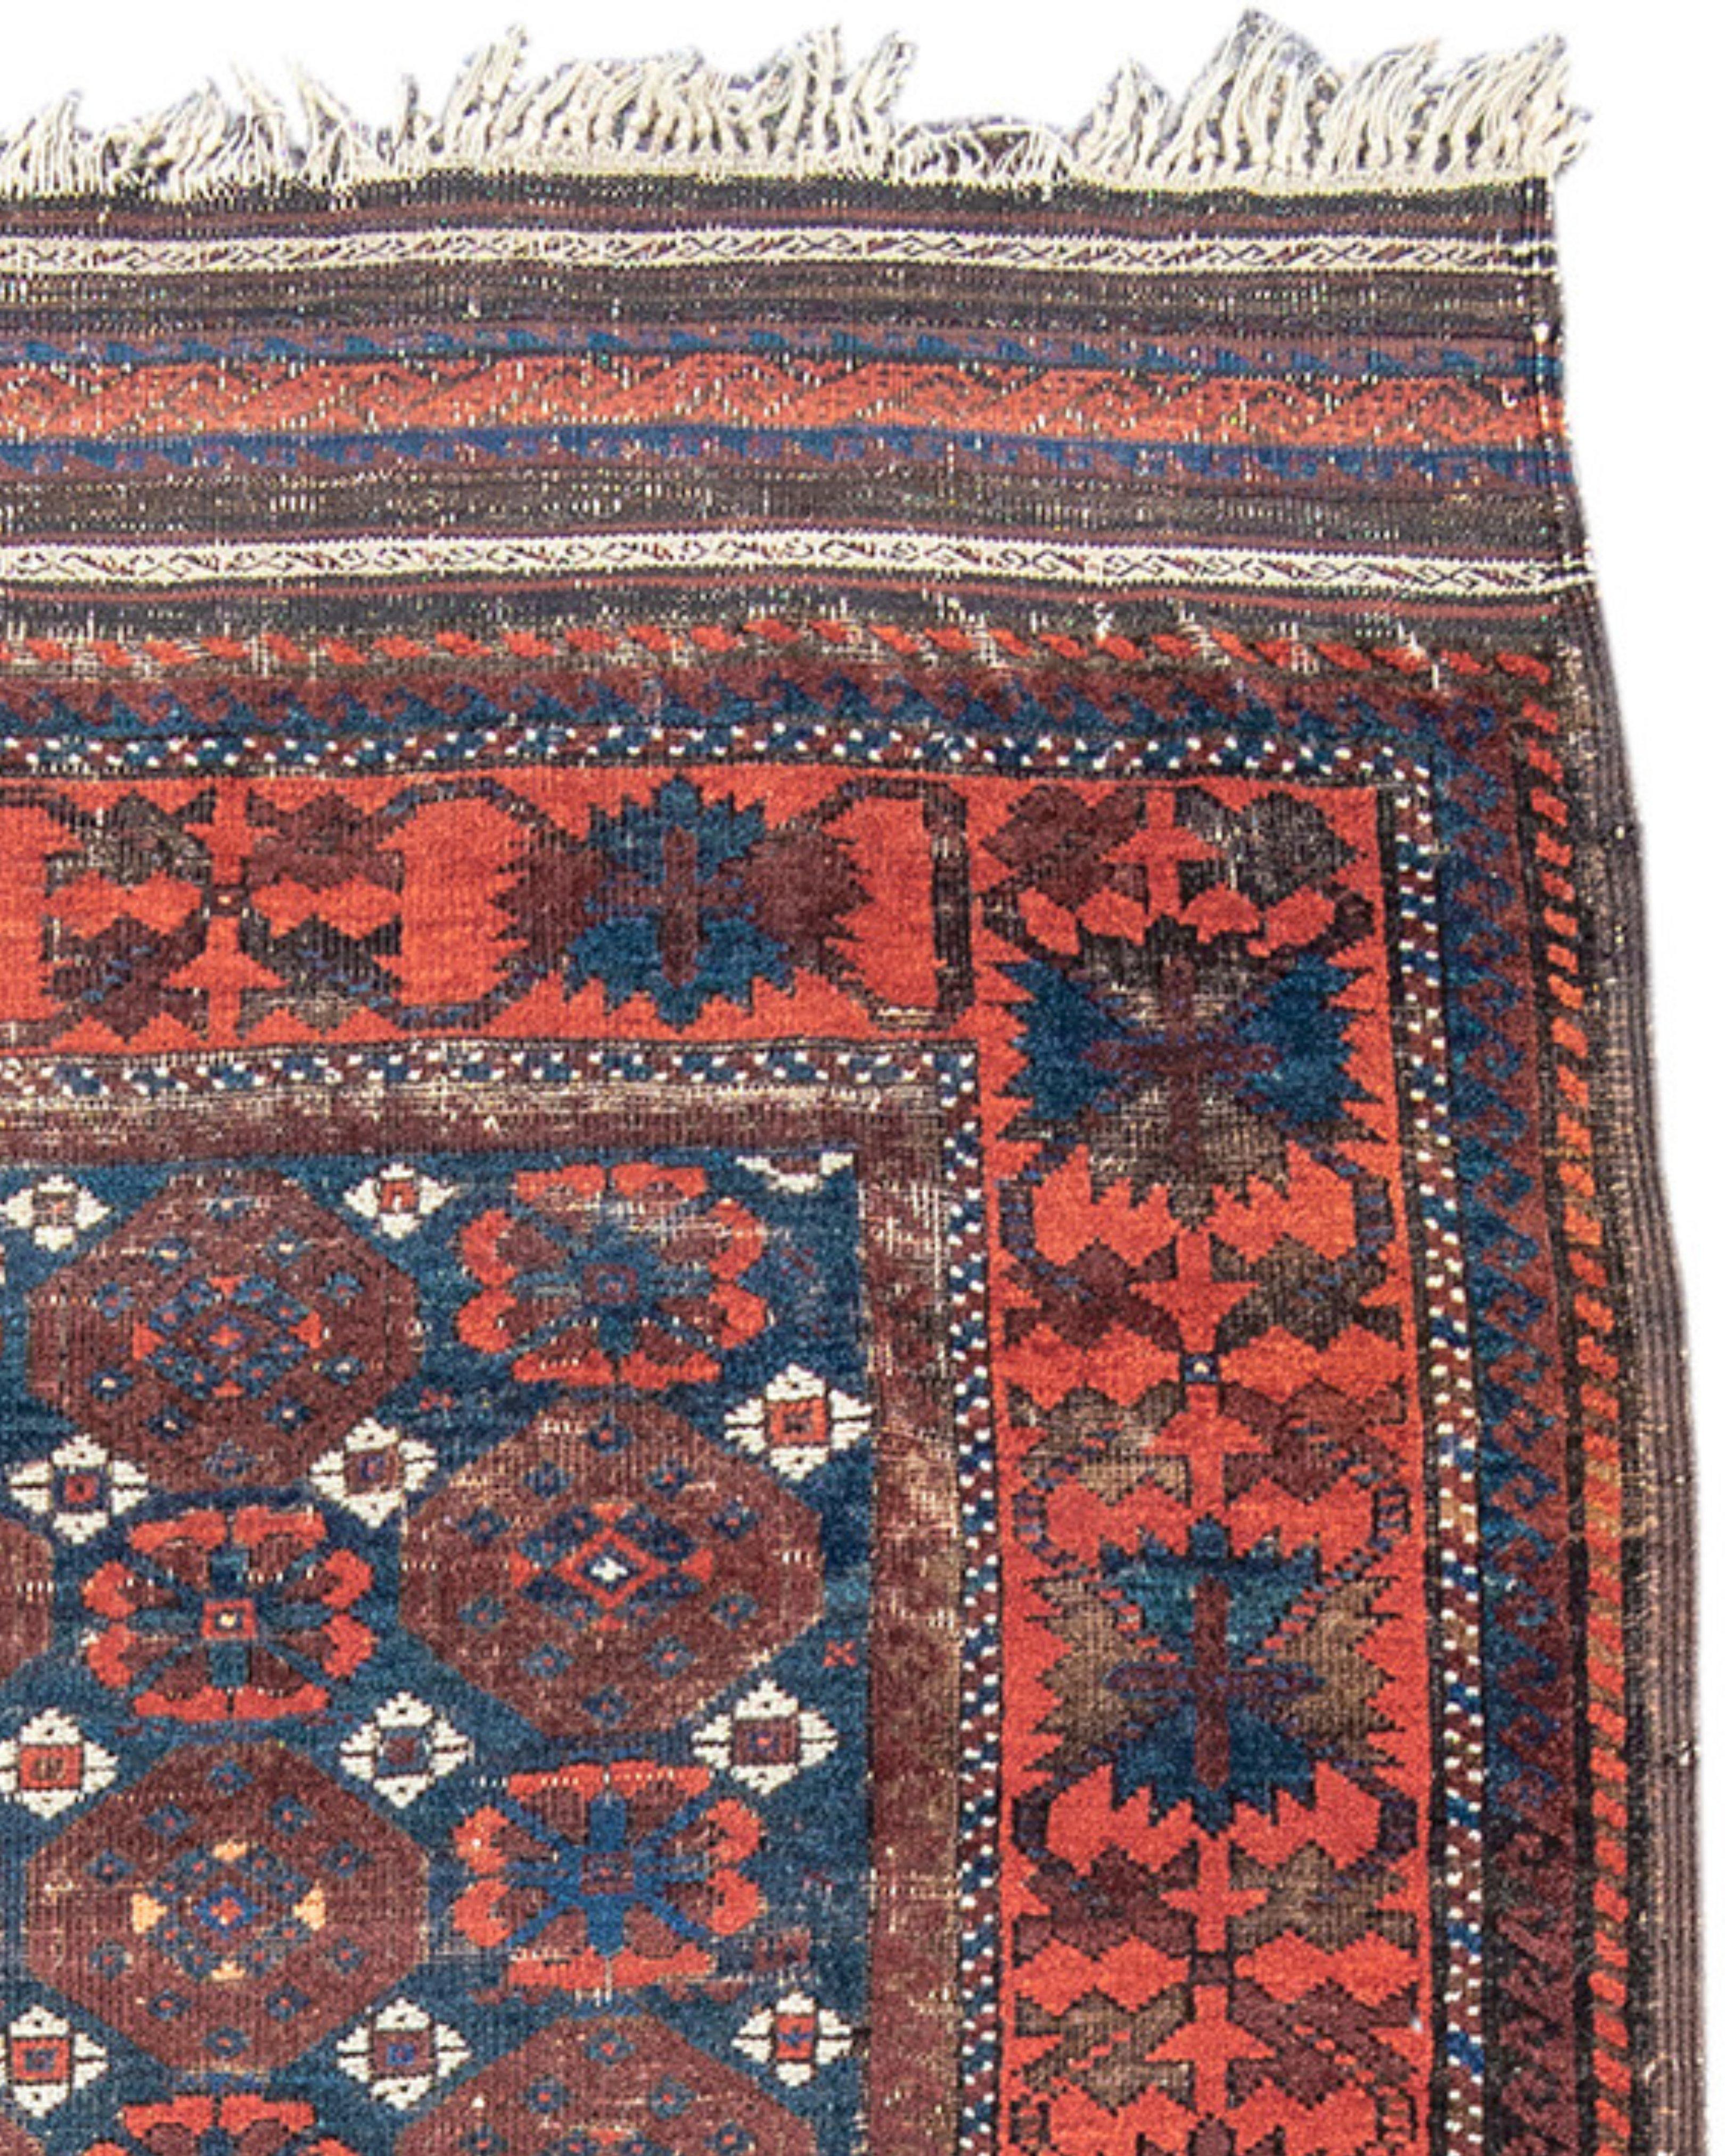 Ancien tapis persan Baluch, fin du 19e siècle

De conception classique, ce tapis provient du nord-est de l'Iran. Connu sous le nom de 